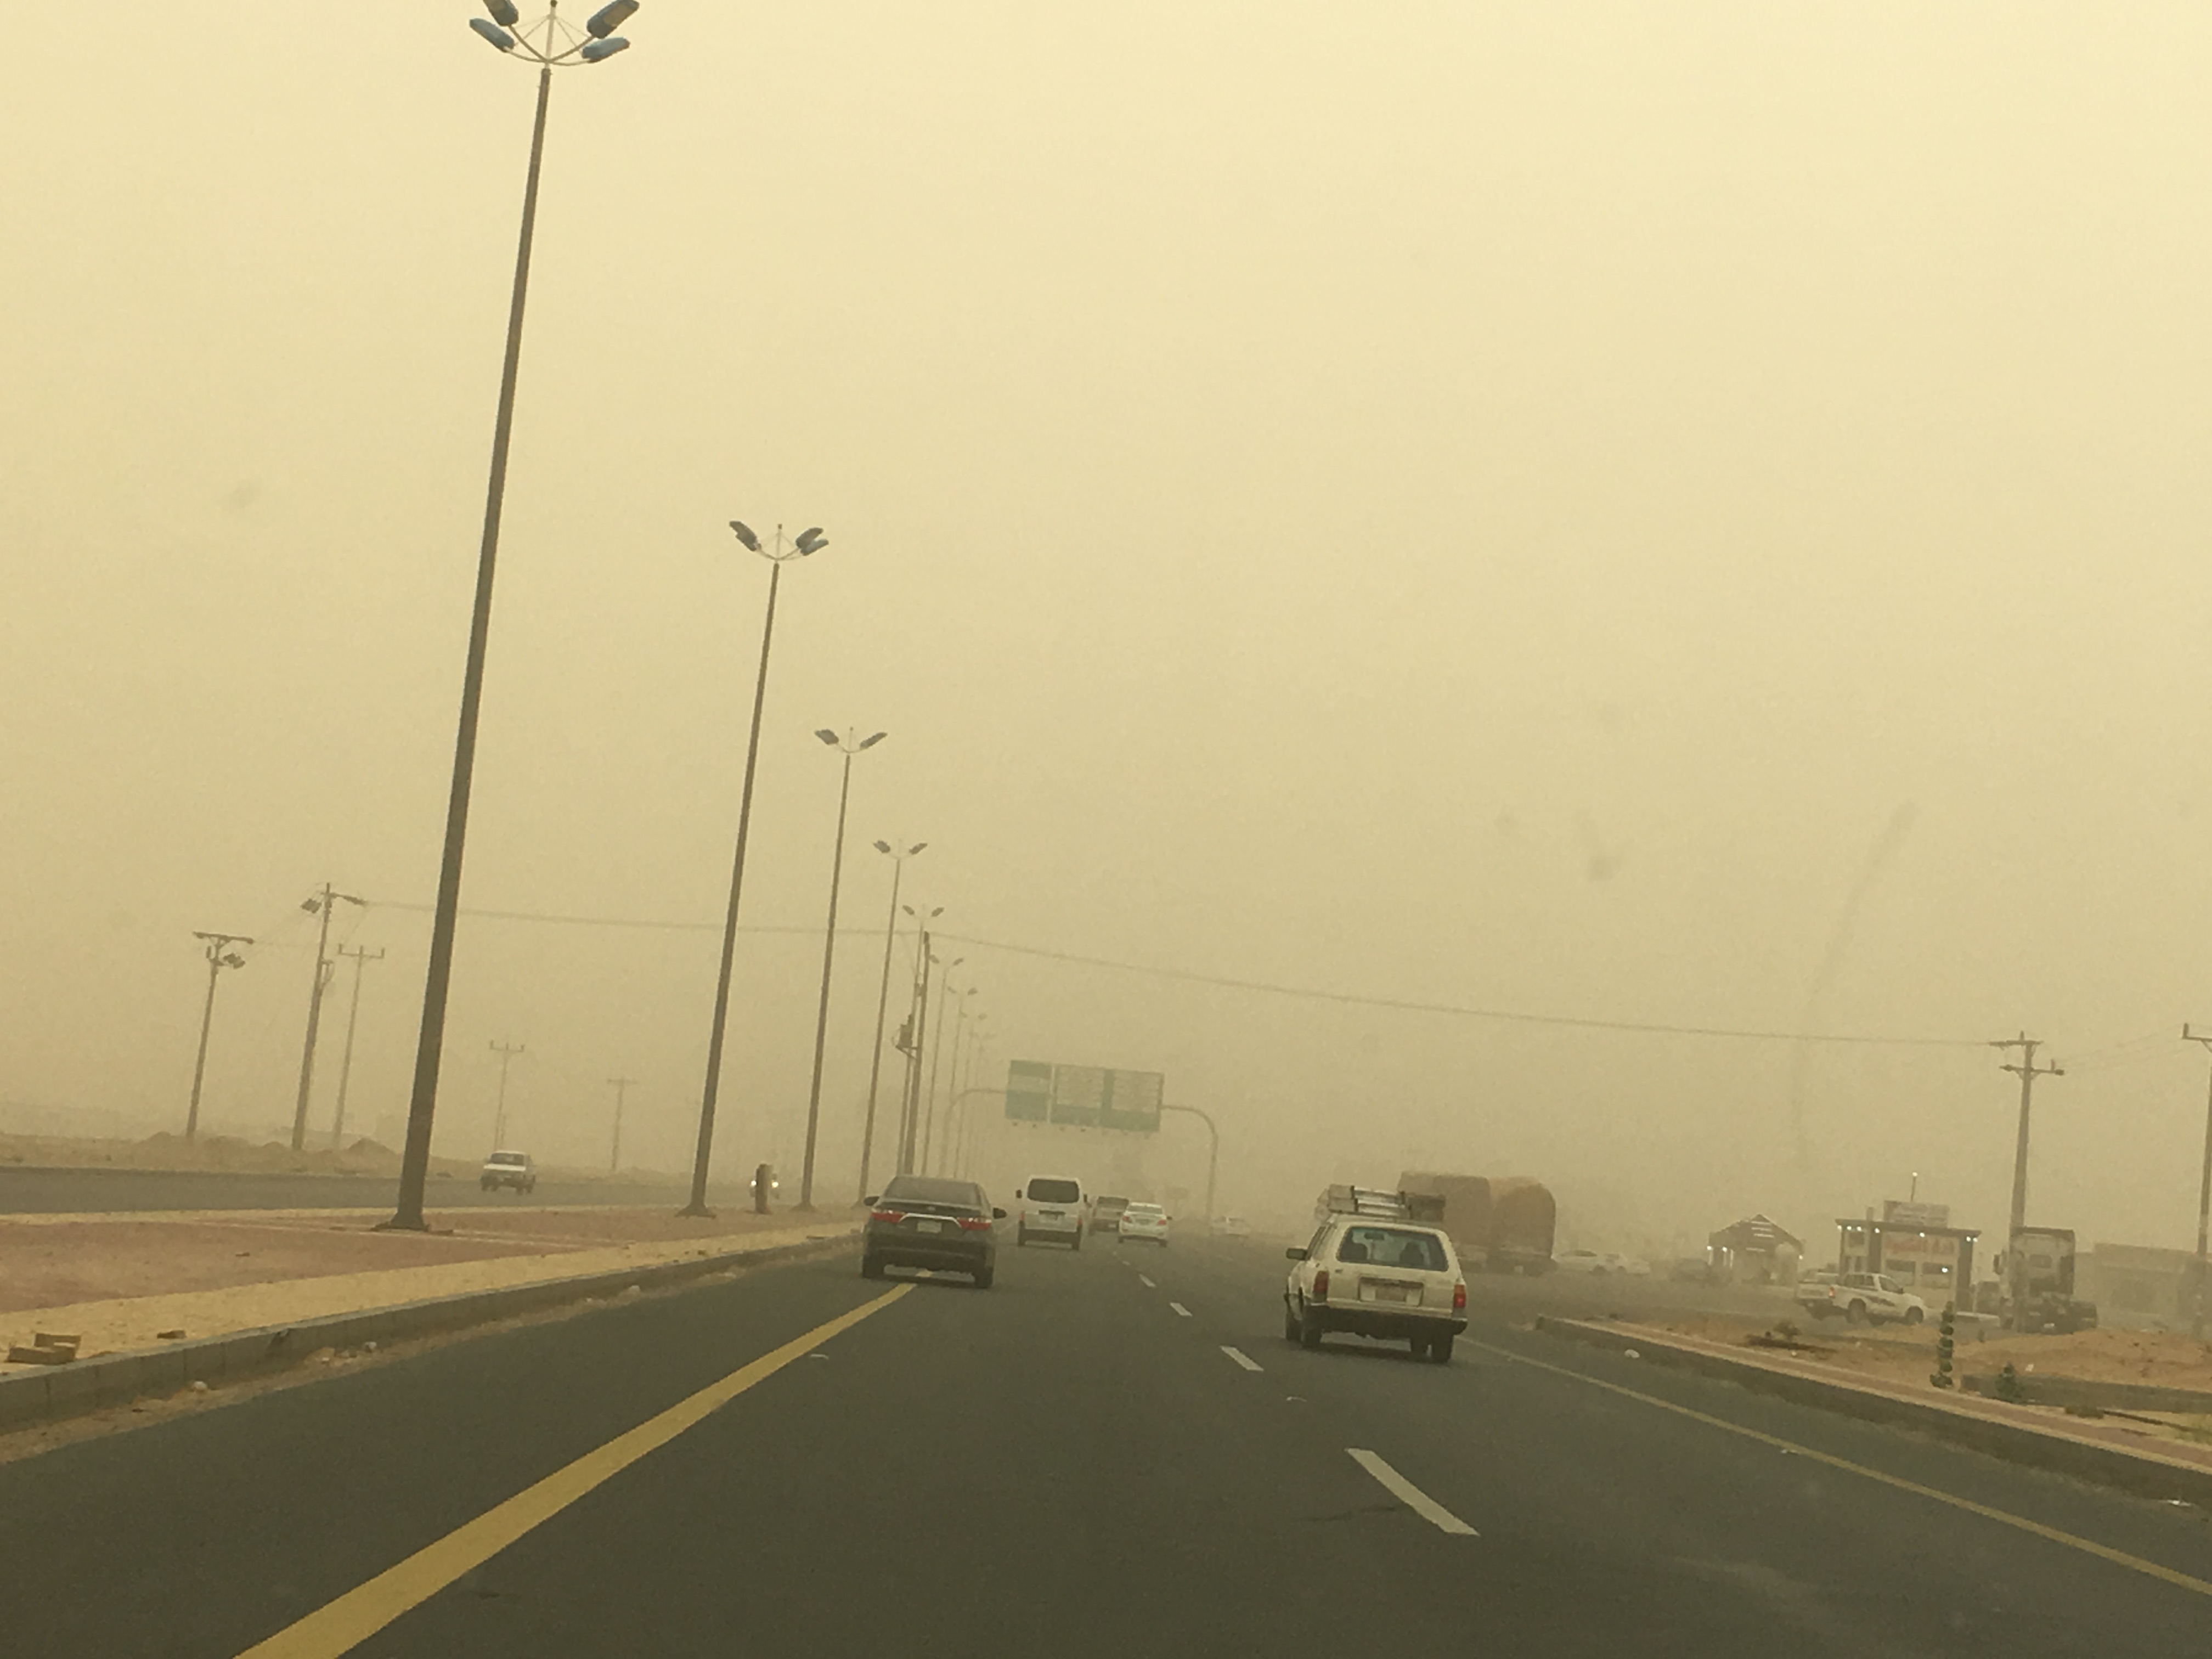 #الأرصاد: غبار يعوق الرؤية في الحفر وأمطار رعدية على الشرقية